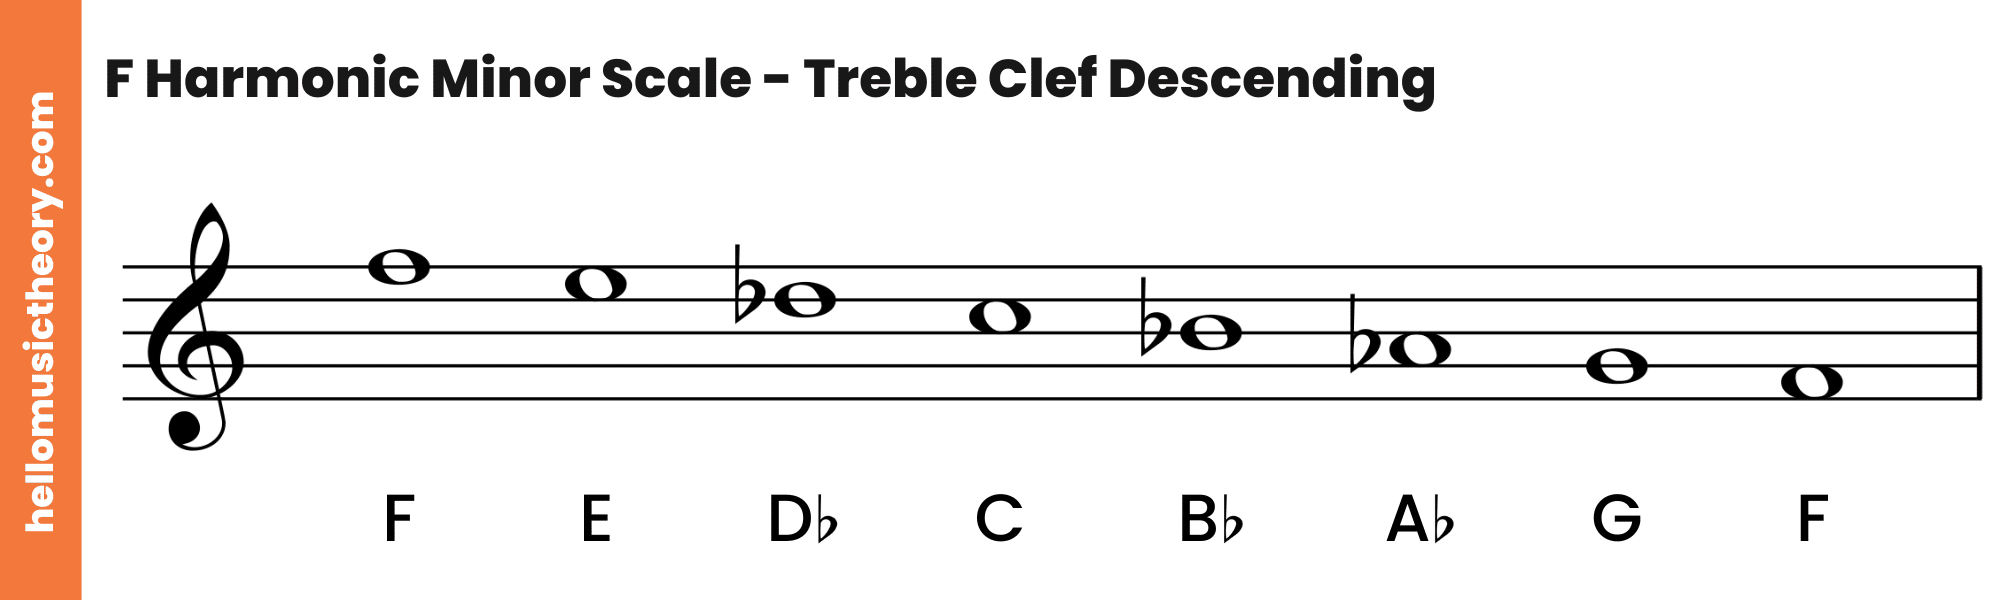 F Harmonic Minor Scale Treble Clef Descending